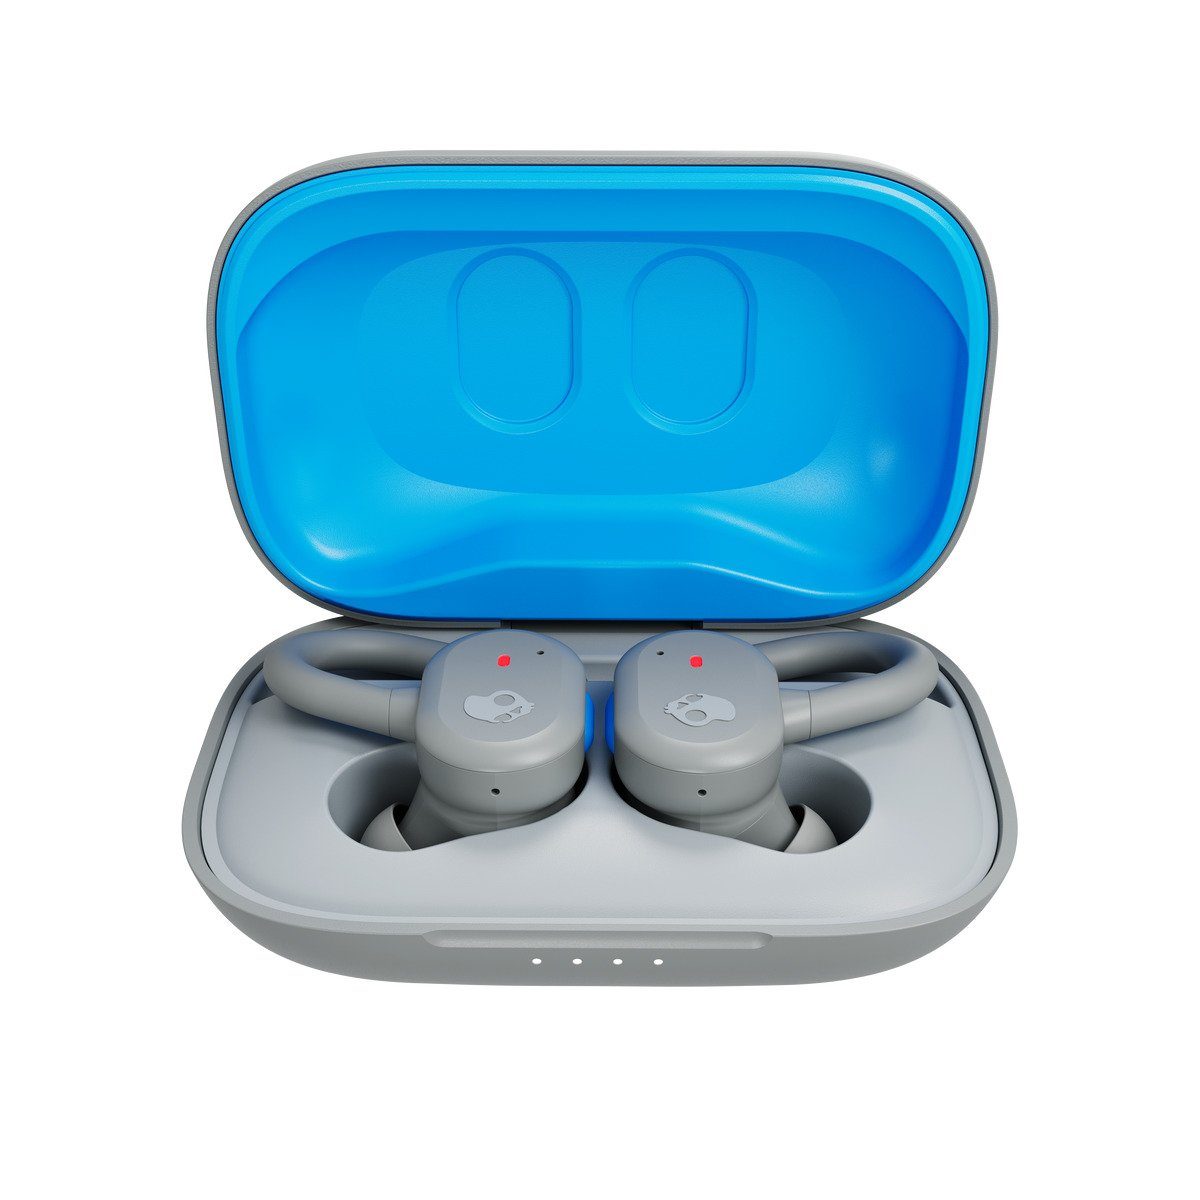 Skullcandy Headset TW IN-EAR Integriertes Sprachsteuerung!, Push Wireless) Hörvergnügen!, Wireless Skull-iQ und Skull-iQ pures (True-Wireless-In-Ear-Kopfhörer!, Schweiß- wireless (IP55)!, Grey/Blue Active 44 In-Ear-Kopfhörer Wasserresistenz Mikrofon!, Stunden True Sprachsteuerung